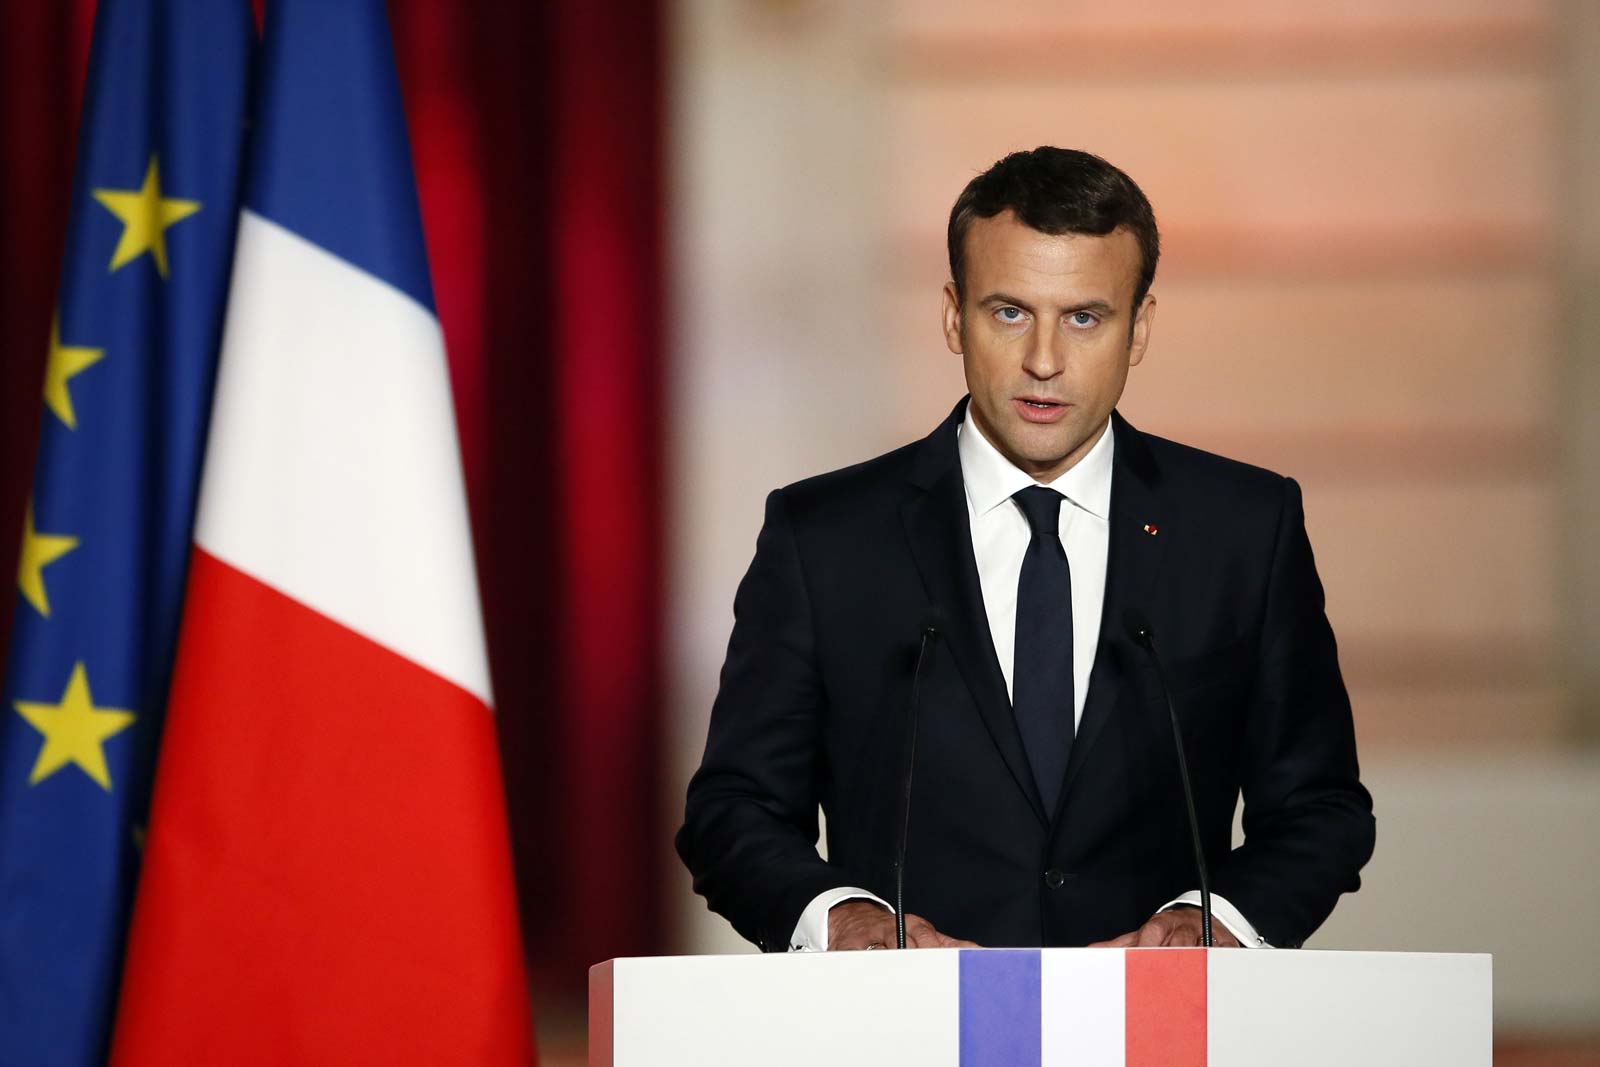 Francia desplegará mayor cantidad de tropas para prevenir ataques terroristas